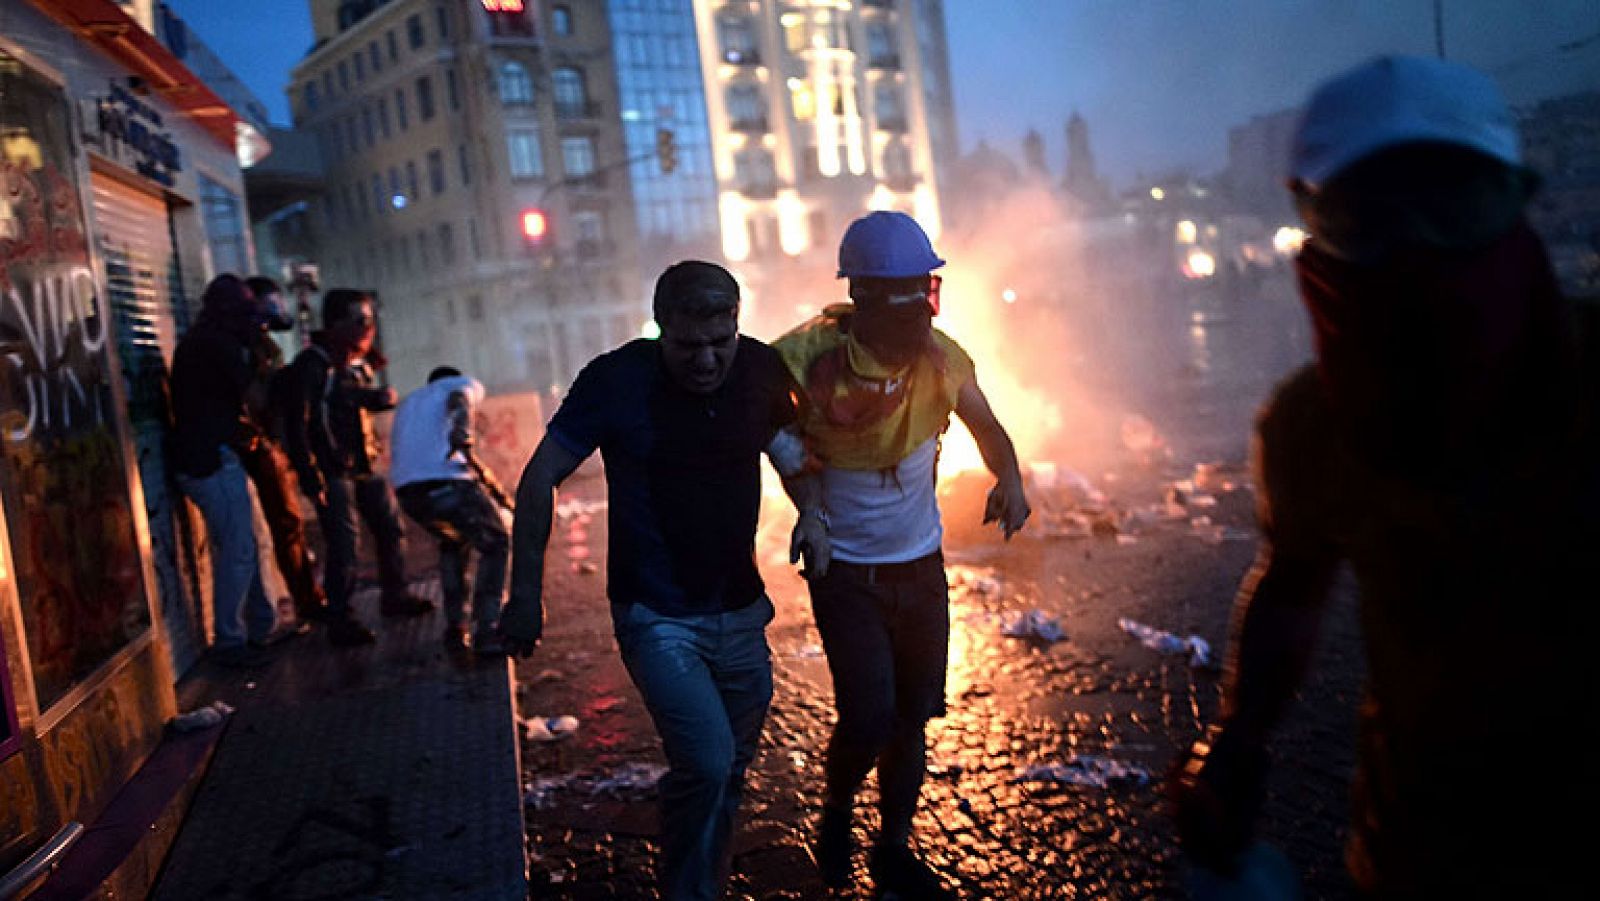  La policía turca se había retirado de la plaza Taksim poco antes de las 6 de la tarde, hora a la que había sido convocada una nueva concentración. Tan solo solo una hora después, la policía ha vuelto a cargar con pelotas de goma y gases lacrimógenos para desalojar la plaza de nuevo. 